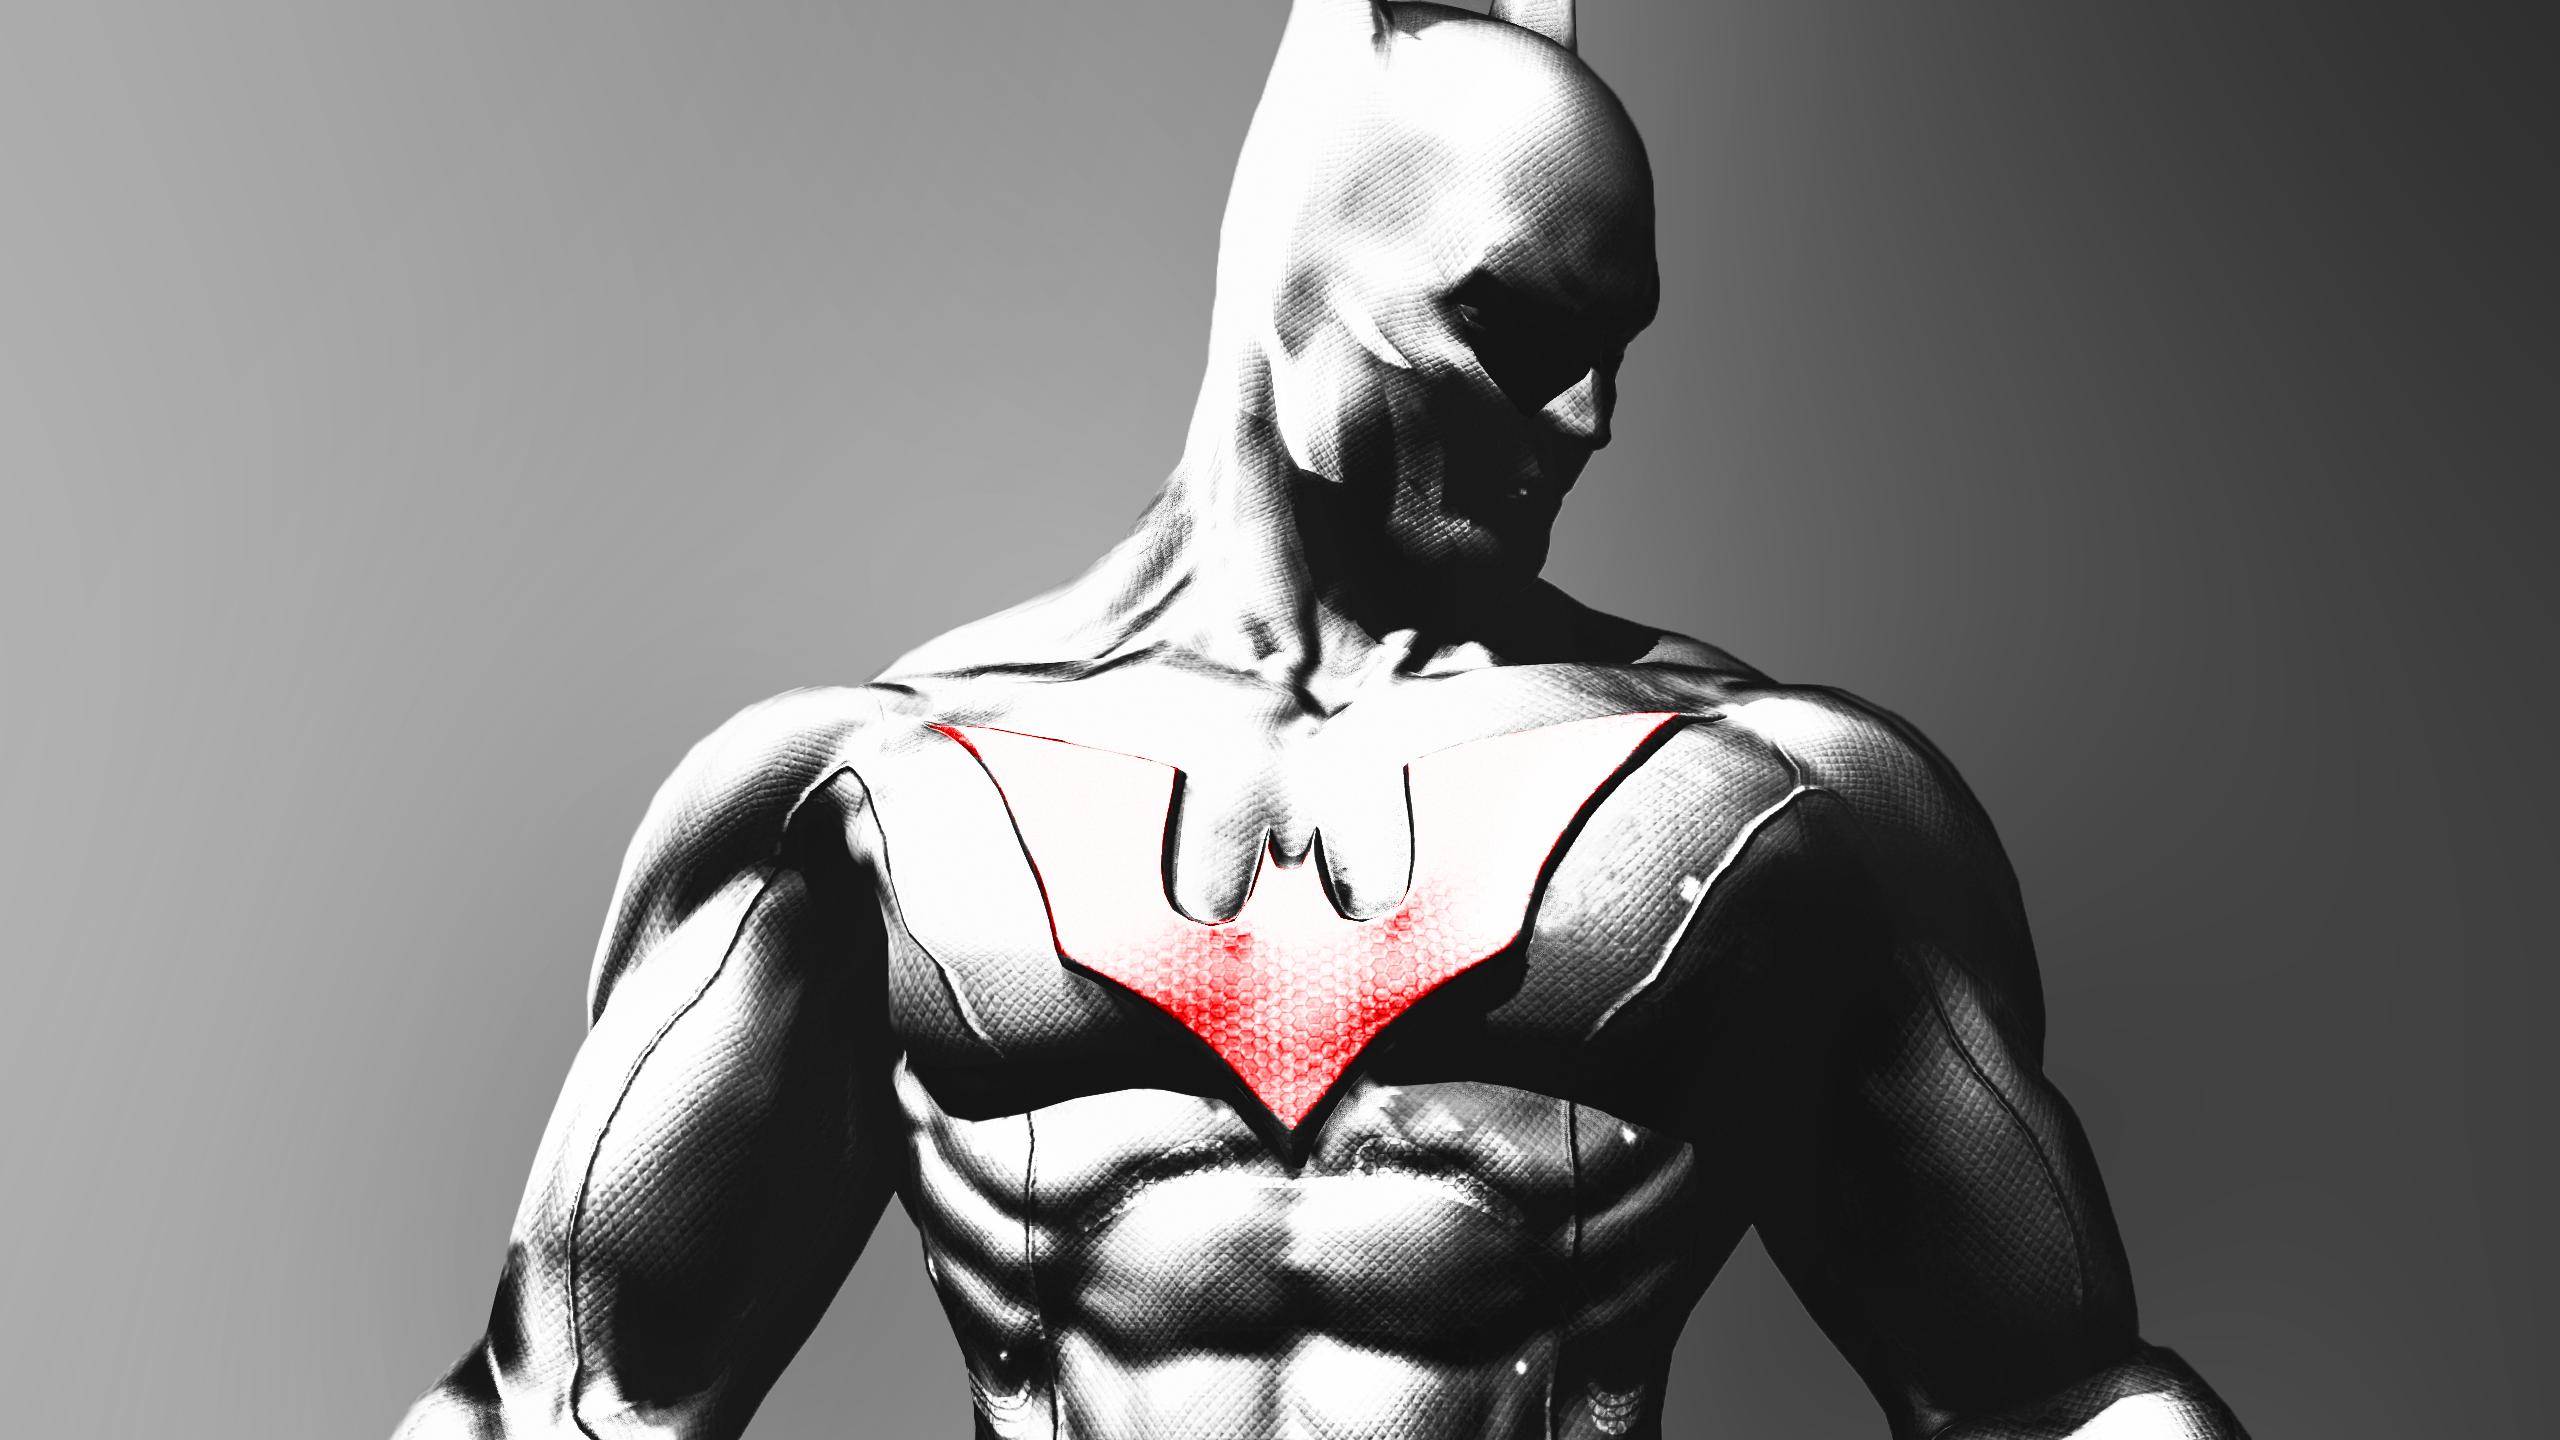 100+] Batman Beyond Wallpapers